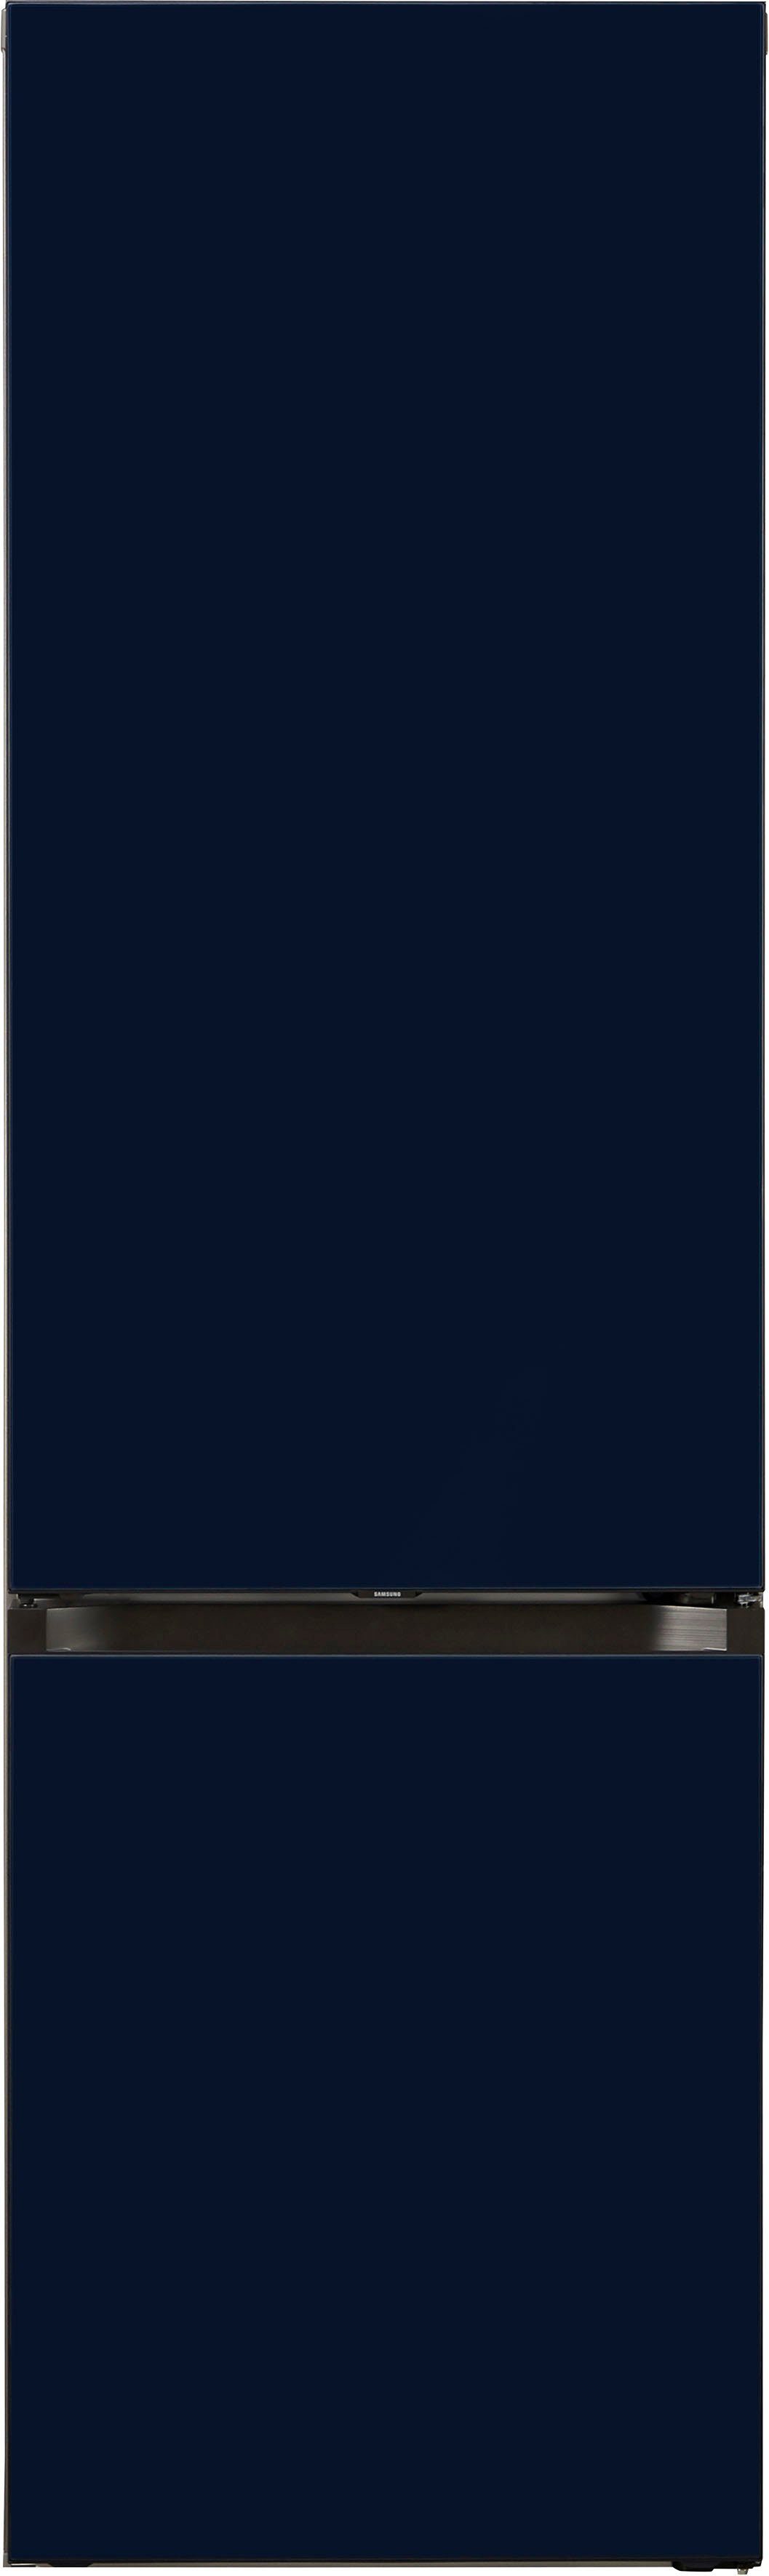 Samsung Kühl-/Gefrierkombination Bespoke hoch, cm 203 59,5 RL38A6B6C41, breit cm